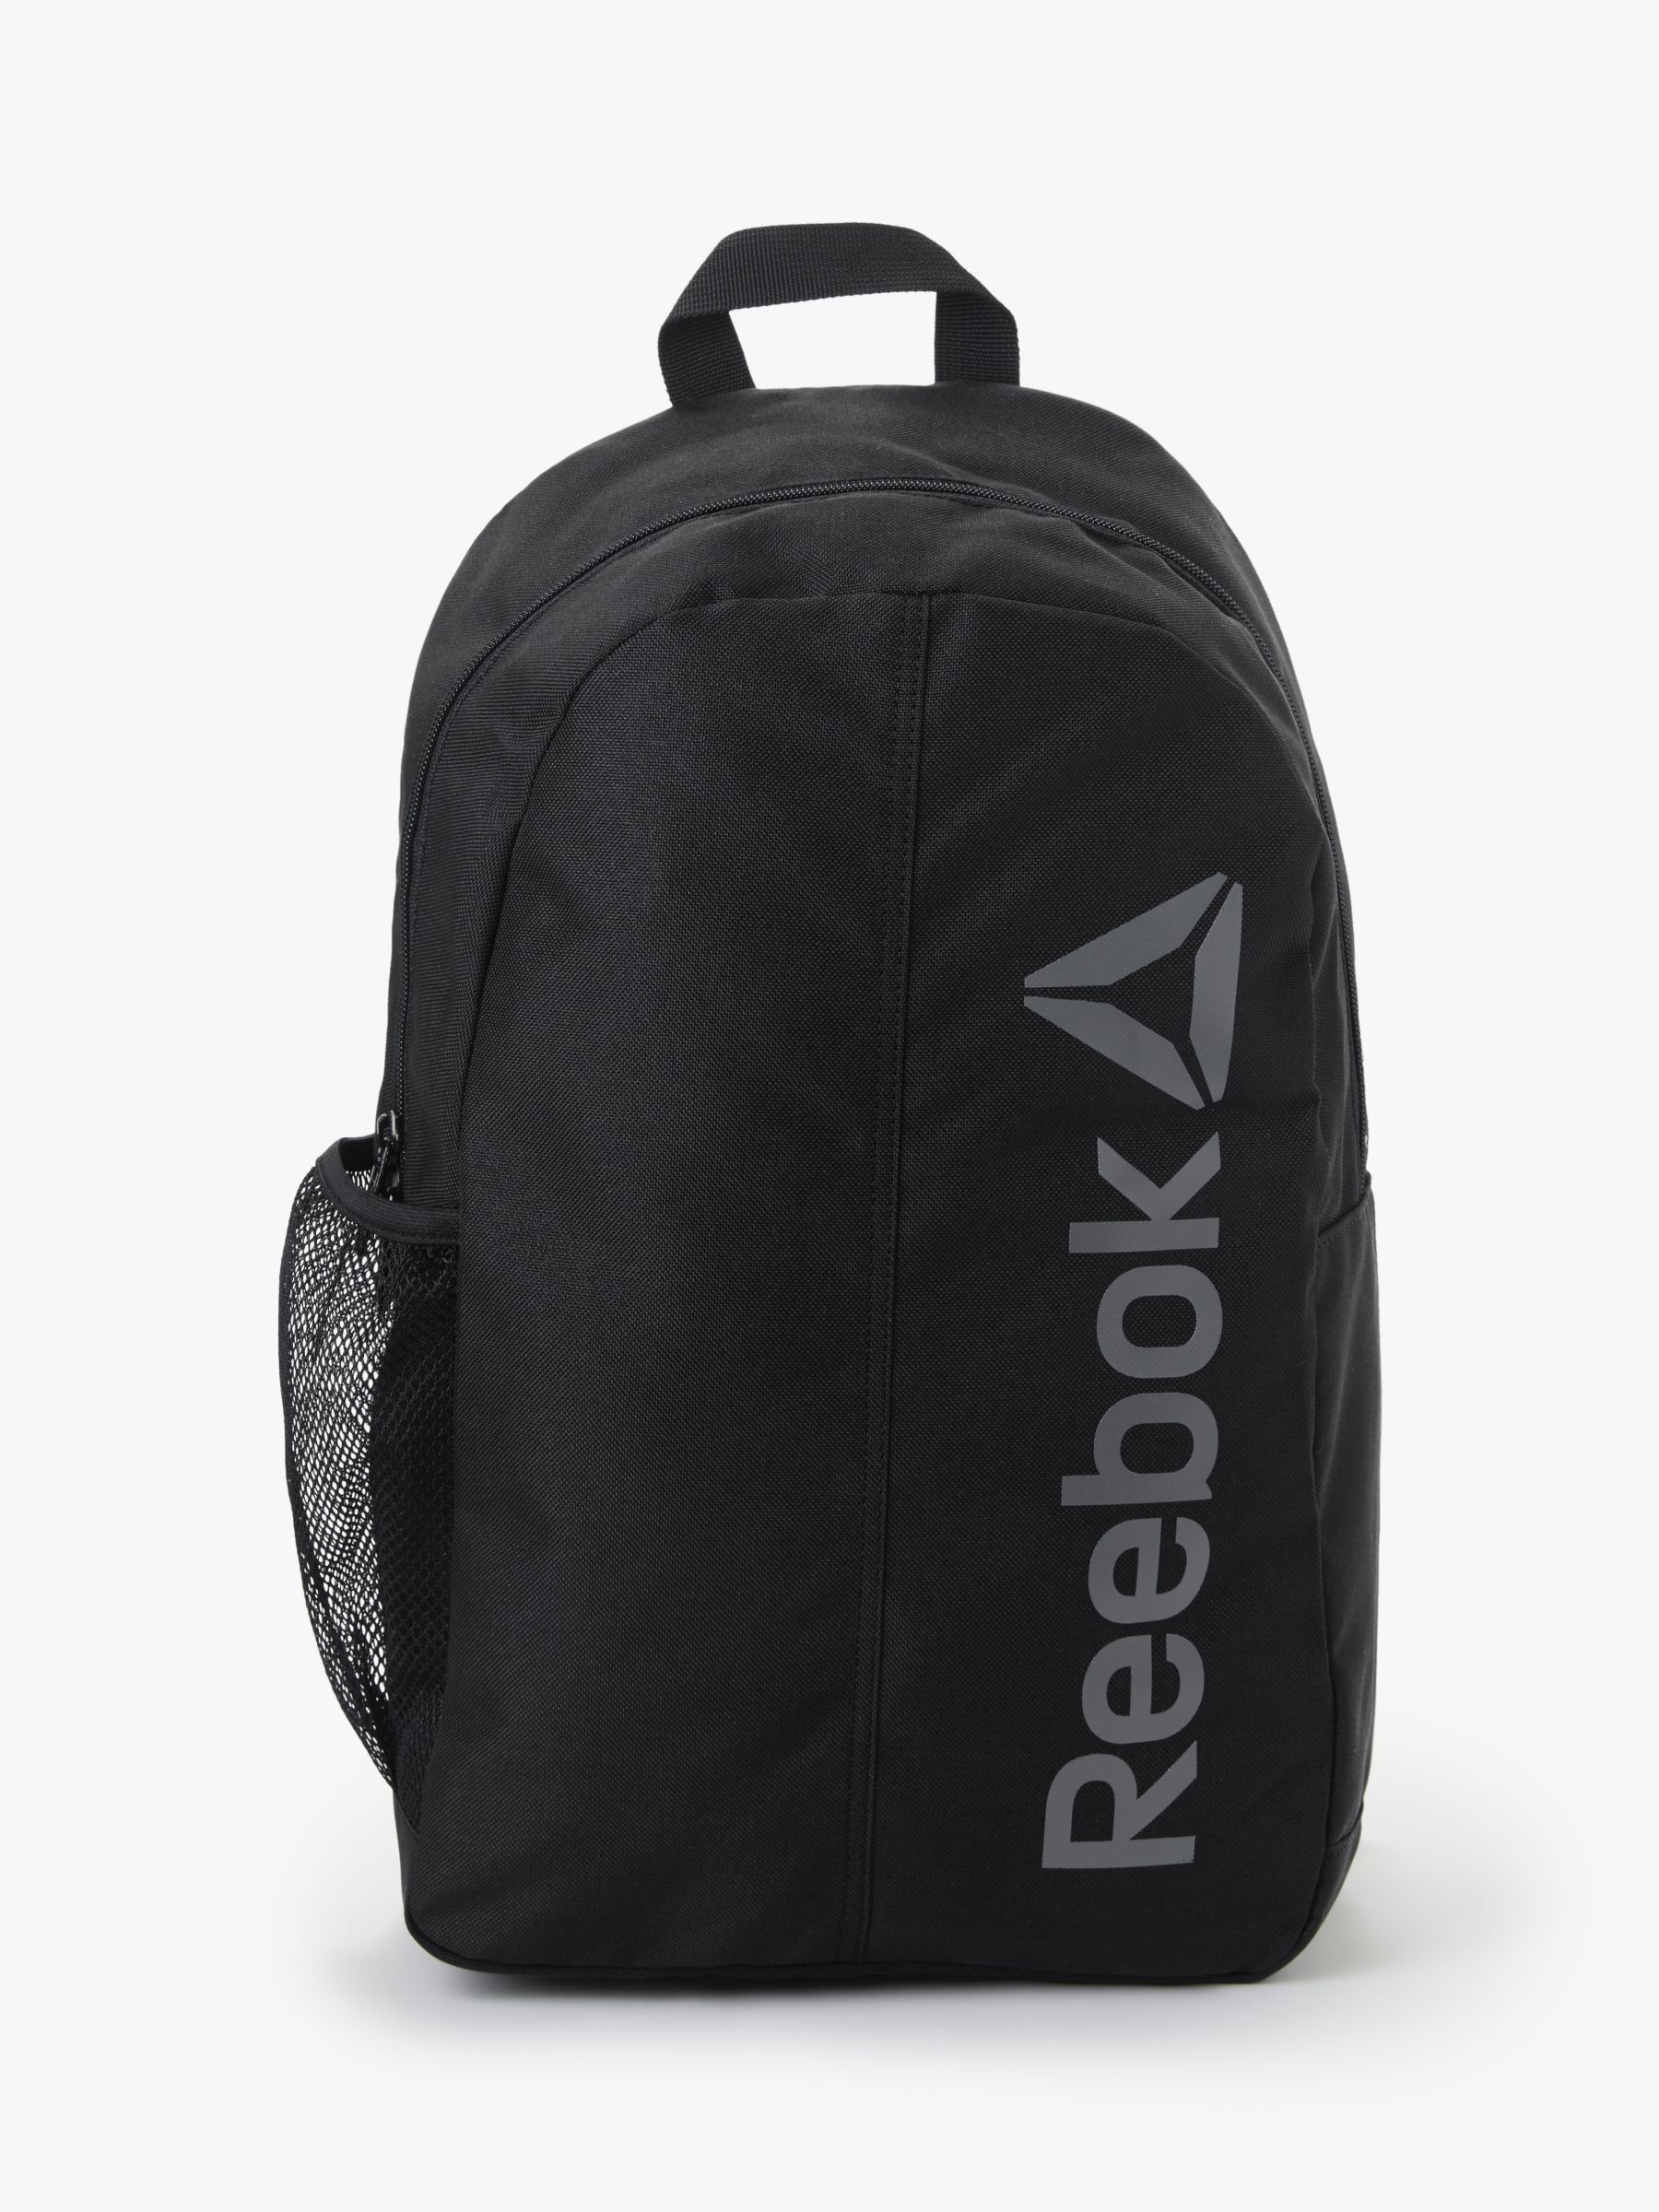 reebok black backpack